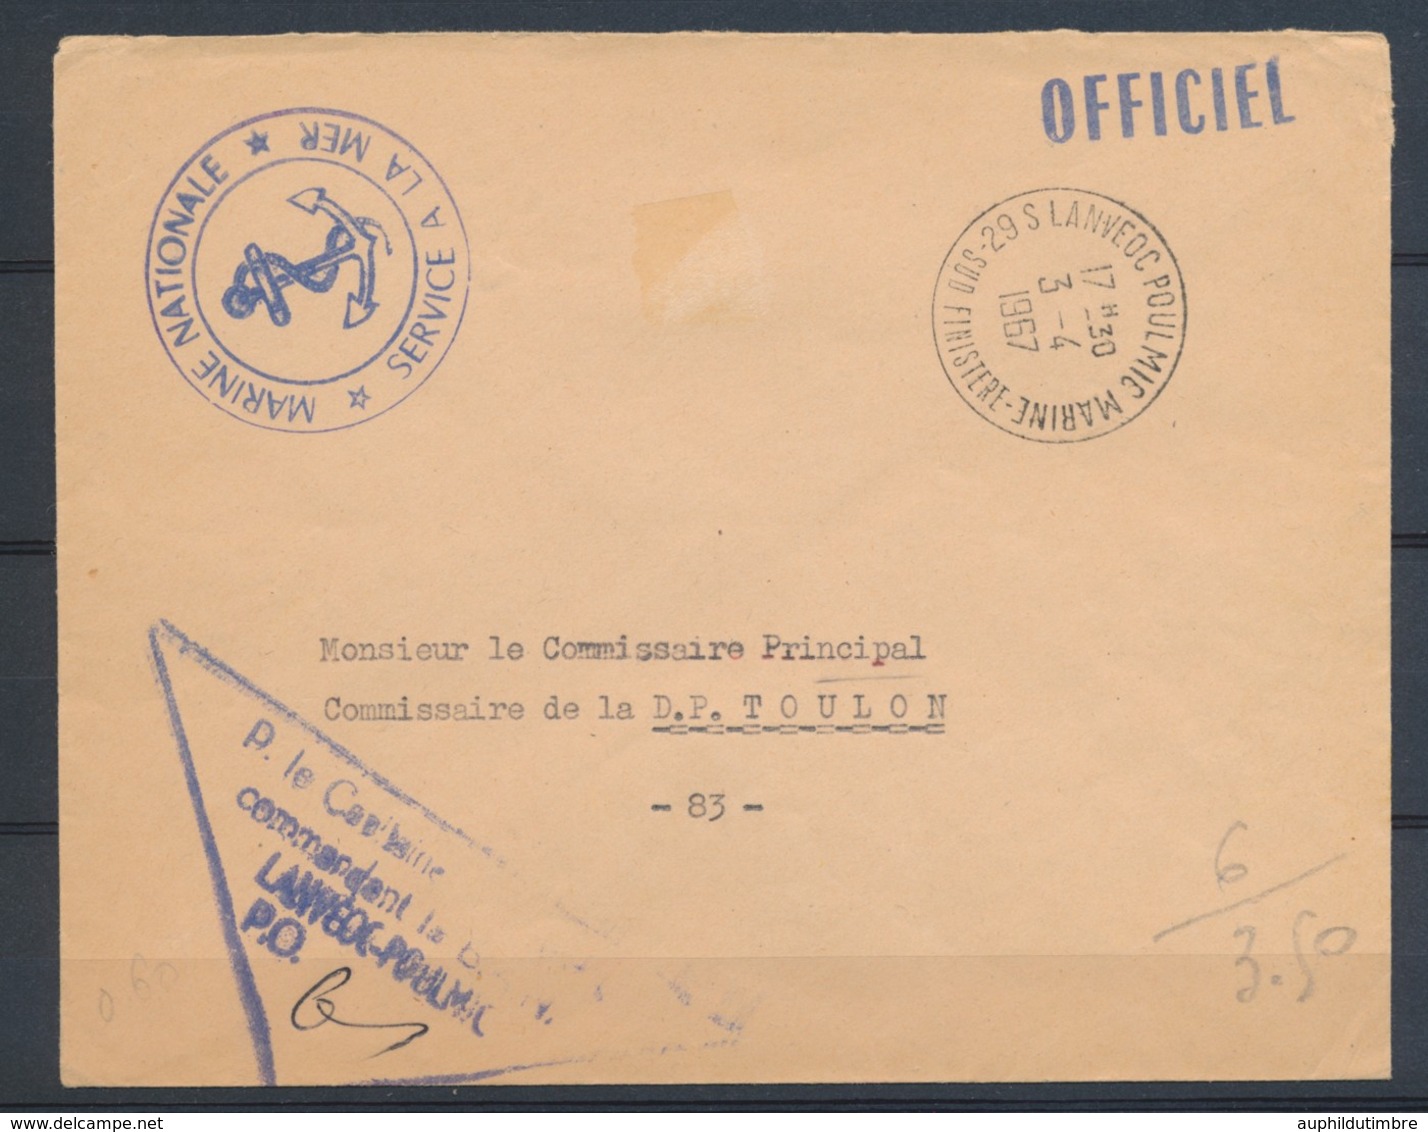 1967 Enveloppe En FM MARINE OFFICIEL 29 S LANVEOC POULMIC Pr Toulon N1822 - Lettres Civiles En Franchise